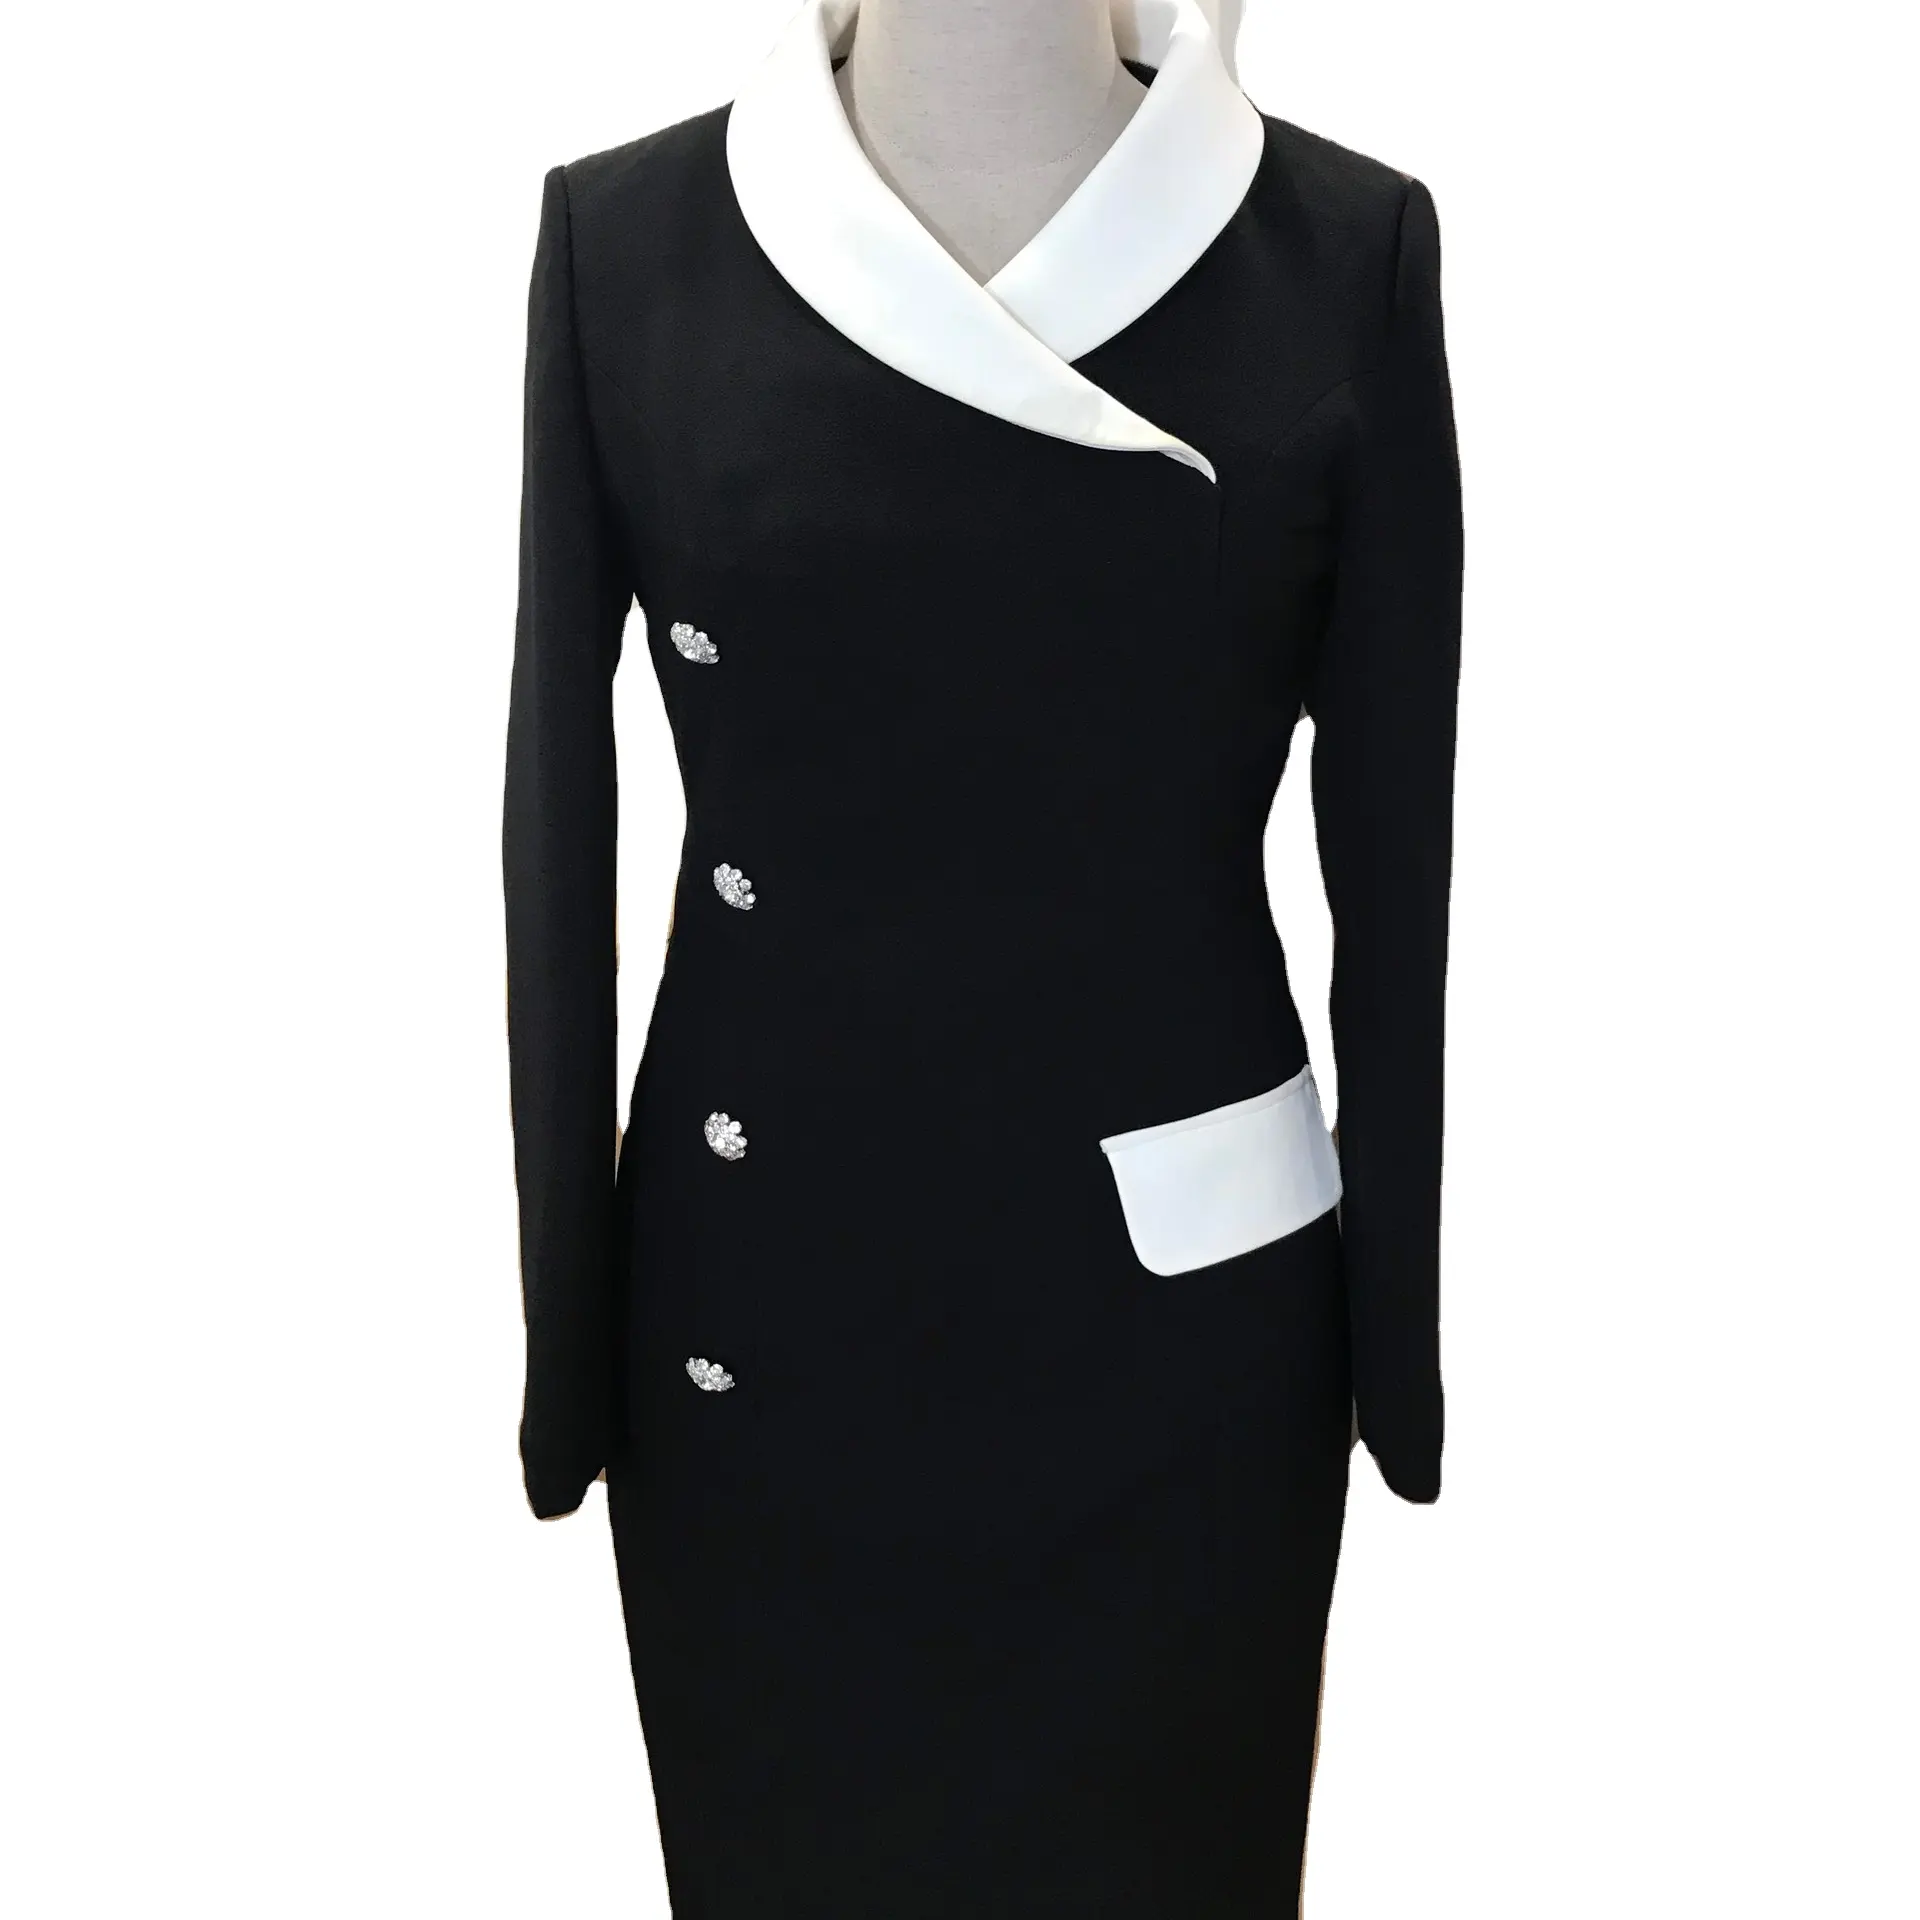 سعر الجملة مادة ممتازة فستان طويل قميص المرأة مكتب أزياء السيدات نمط الأكمام فستان أسود المرأة